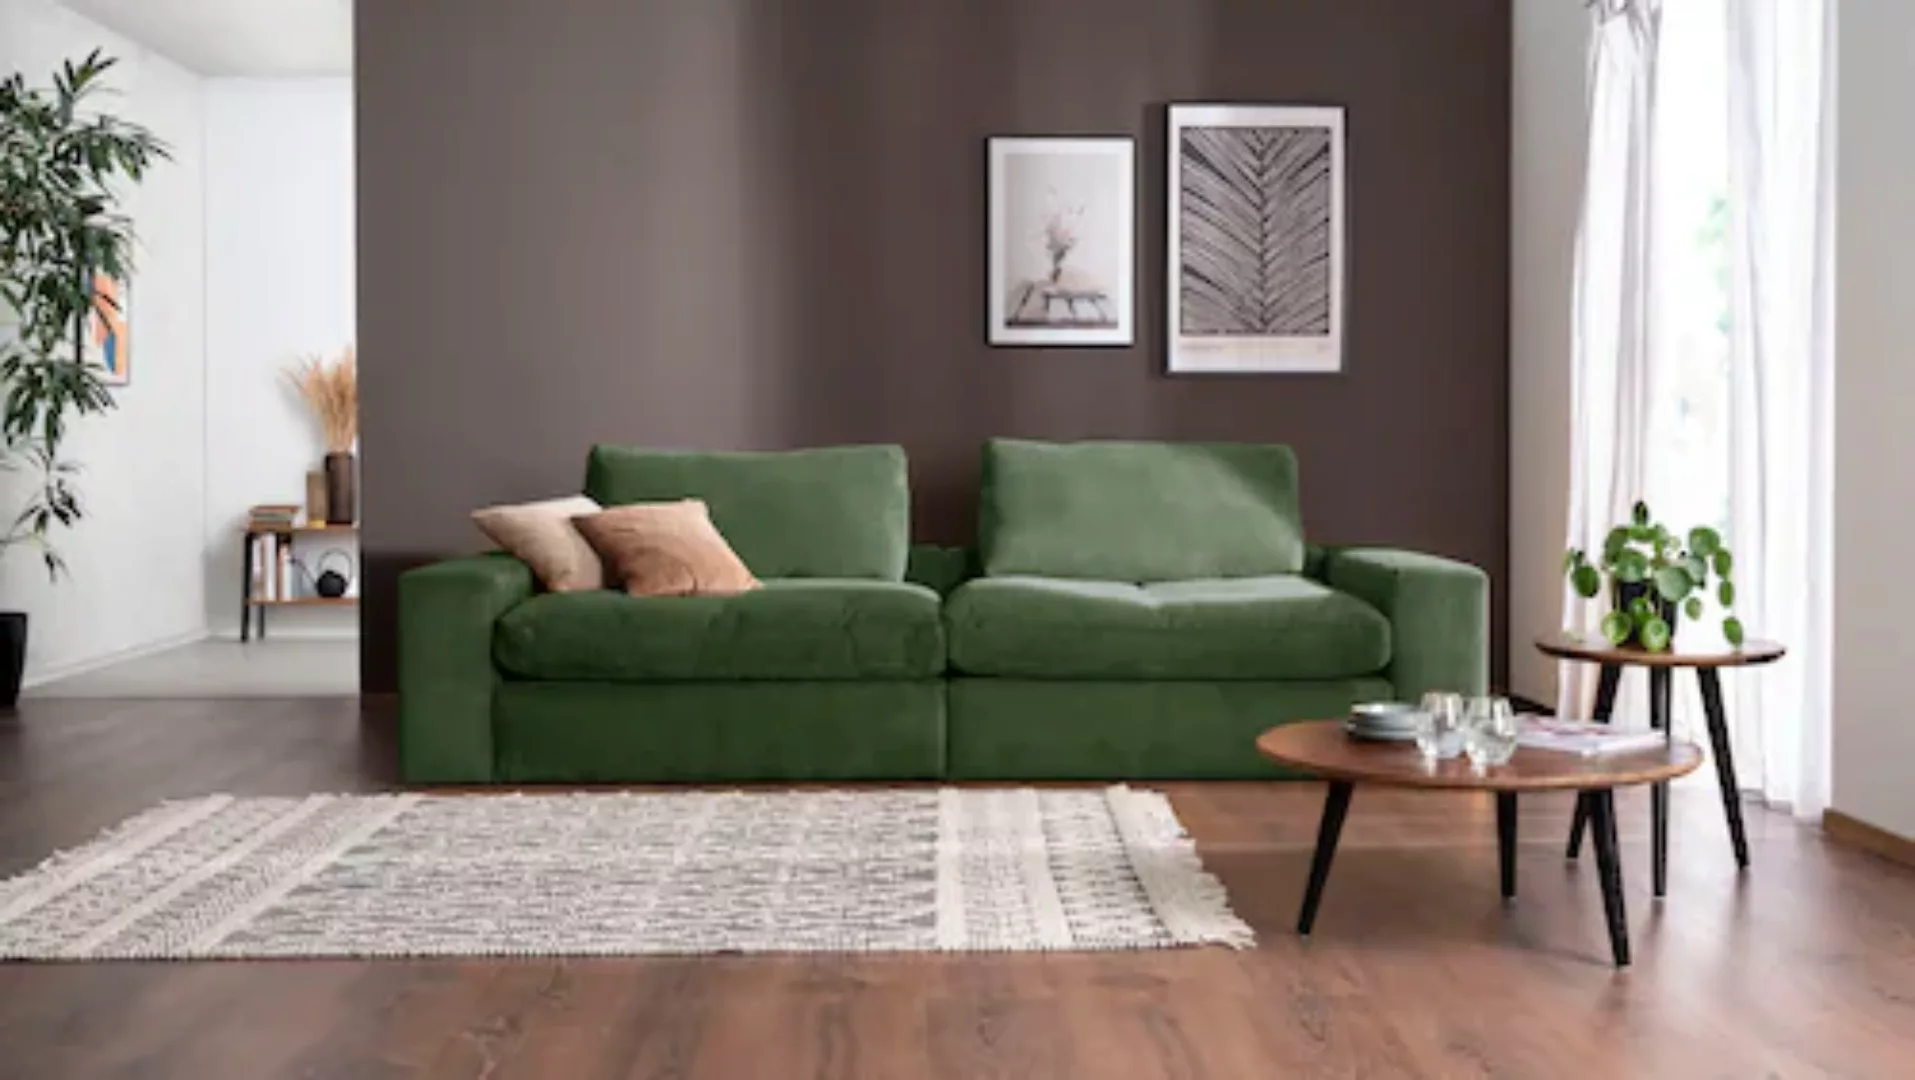 alina Big-Sofa »Sandy« günstig online kaufen